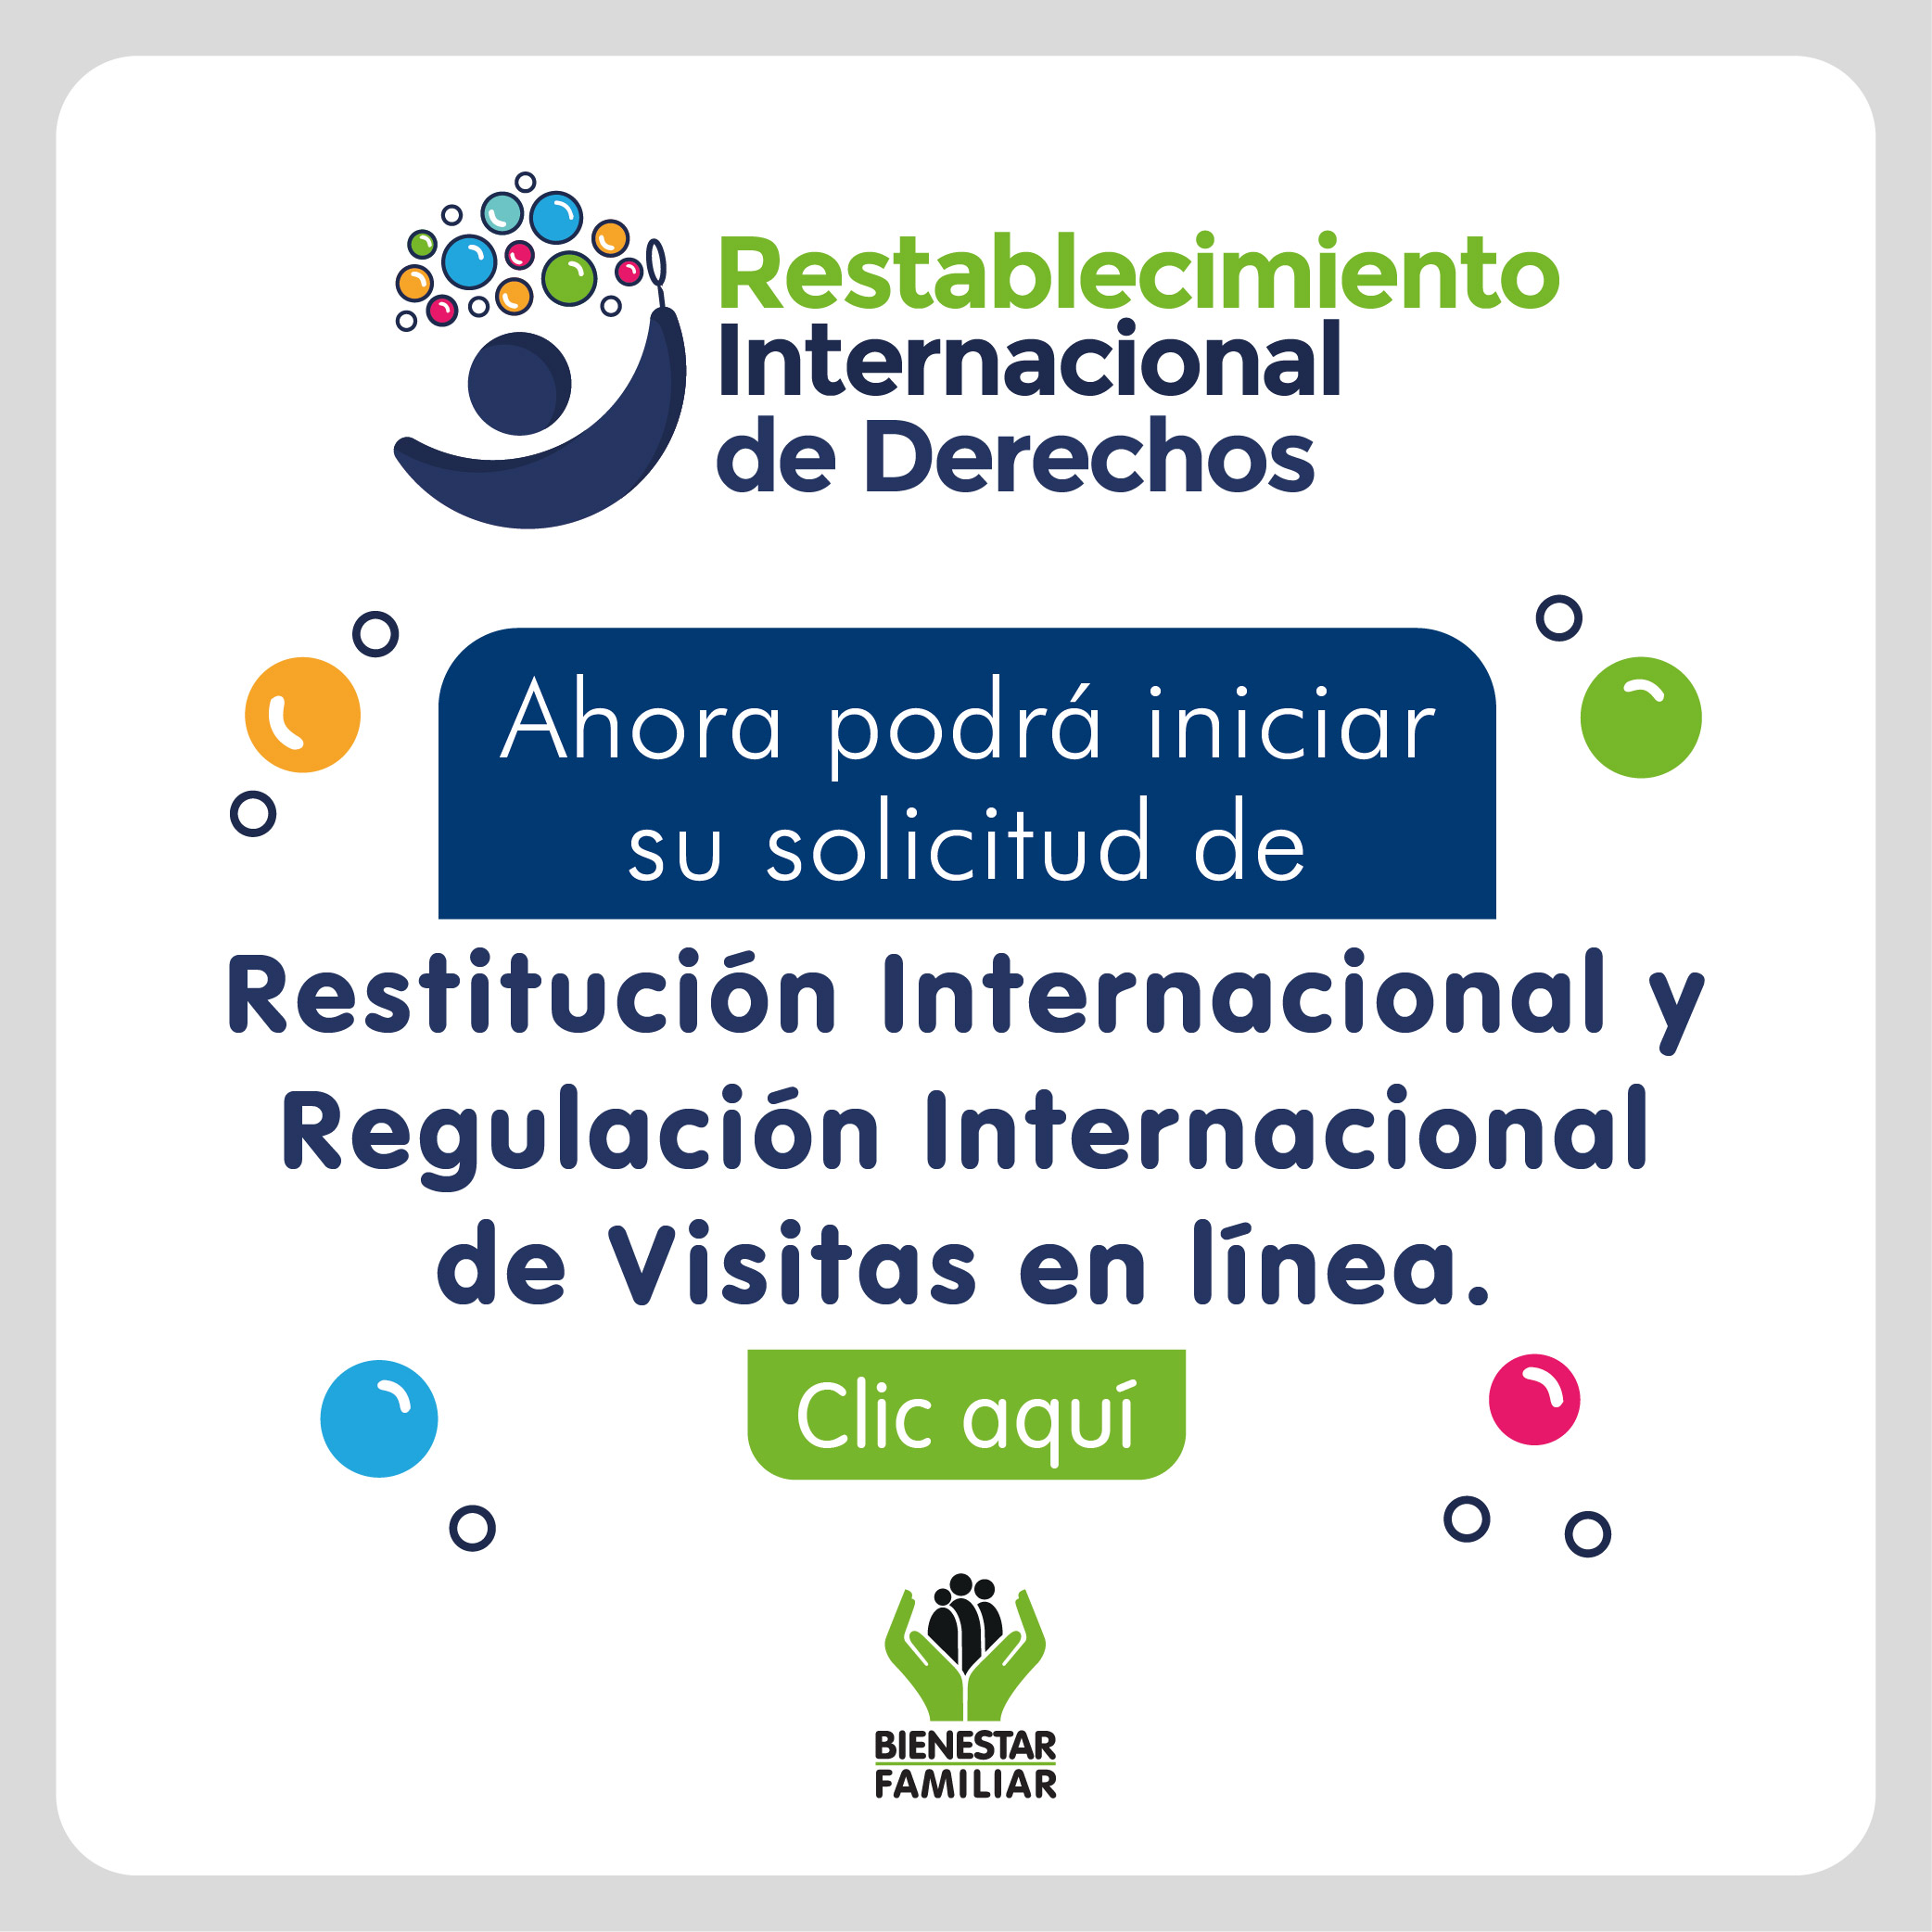 Restitución Internacional y Regulación de Visitas